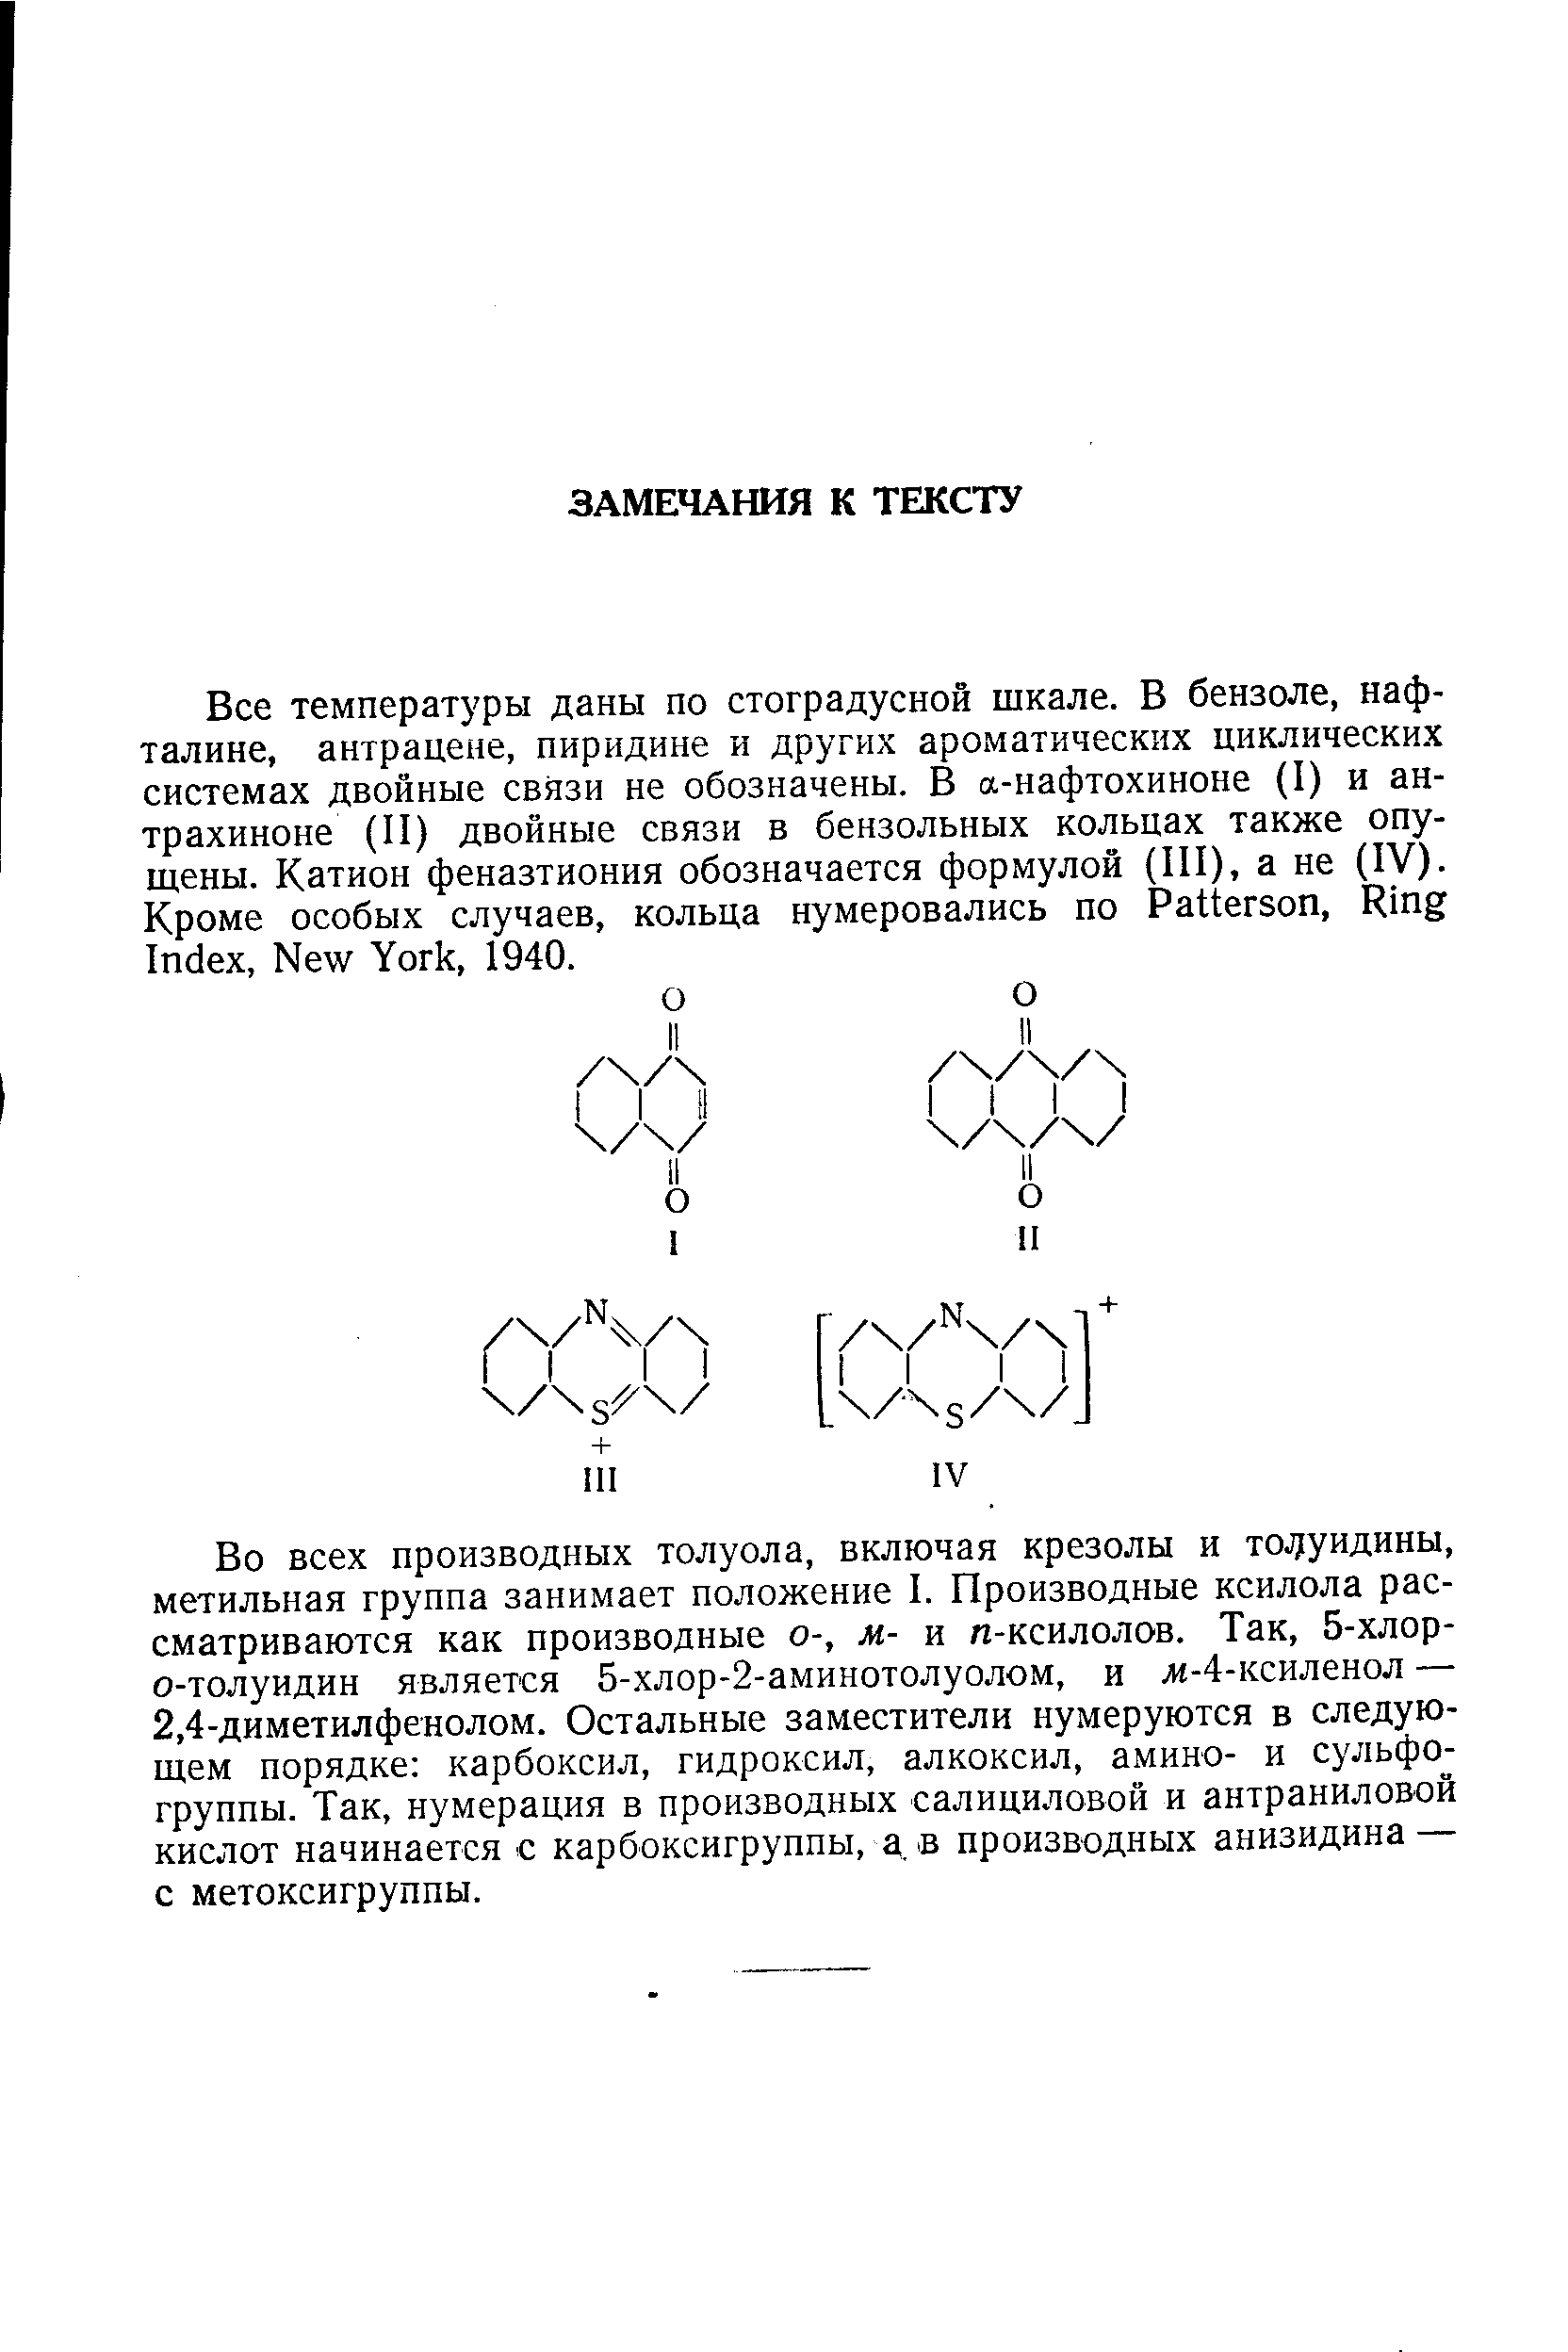 Во всех производных толуола, включая крезолы и то уидины, метильная группа занимает положение I. Производные ксилола рассматриваются как производные о-, м- и л-ксилолов. Так, 5-хлор-о-толуидин является 5-хлор-2-аминотолуолом, и ж-4-ксиленол — 2,4-диметилфенолом. Остальные заместители нумеруются в следующем порядке карбоксил, гидроксил, алкоксил, амино- и сульфо-группы. Так, нумерация в производных салициловой и антраниловой кислот начинается с карбоксигруппы, а, в производных анизидина — с метоксигруппы.